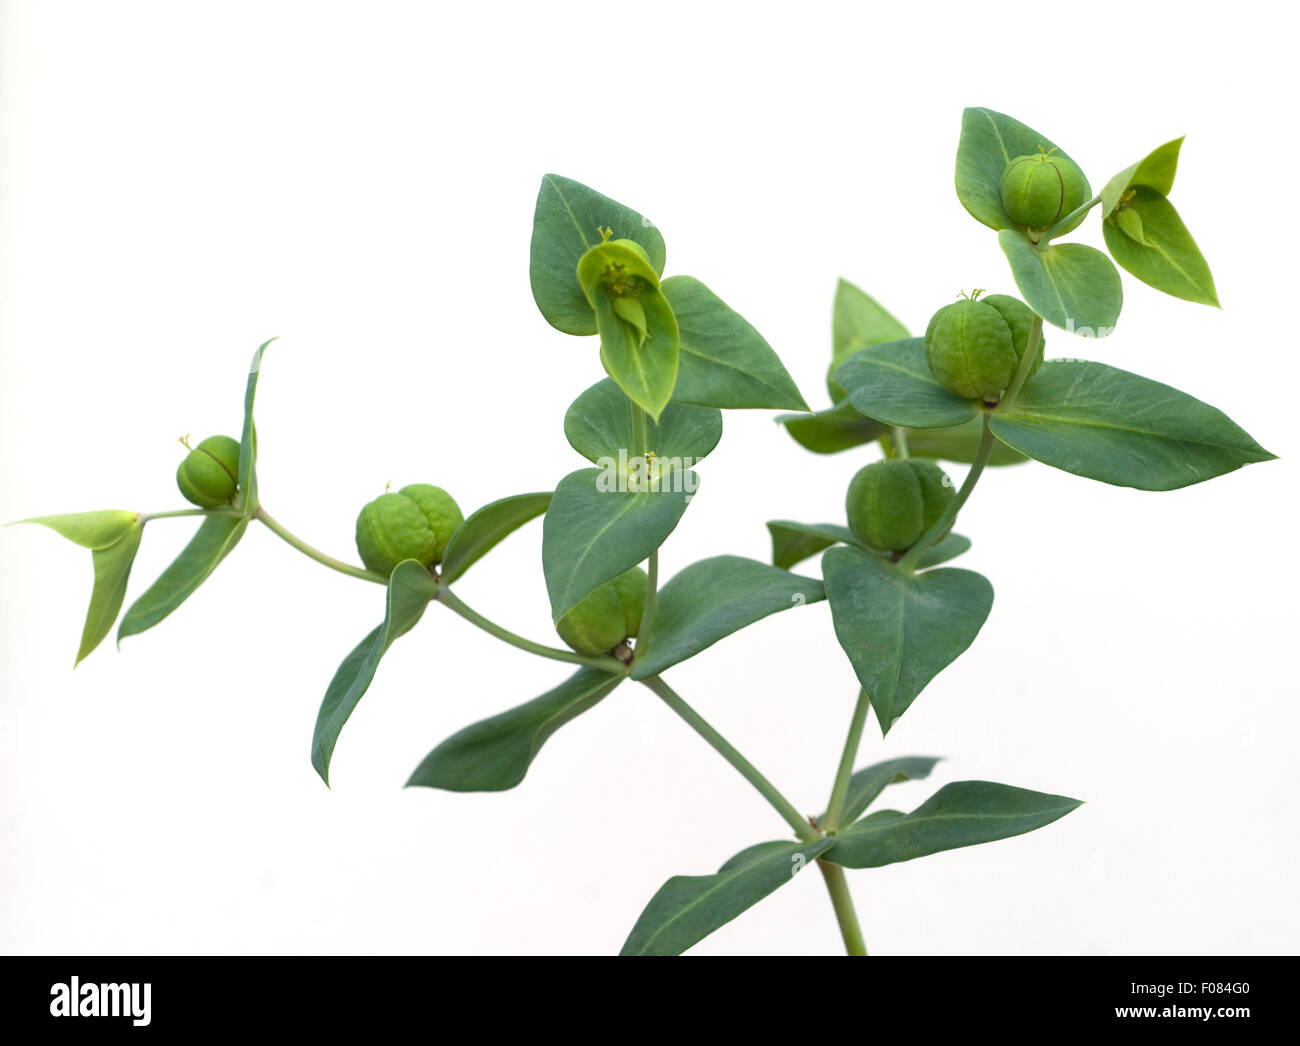 Kreuzblaettrige Wolfsmilch, Wolfsmilch, Euphorbia, lathyrus, Stock Photo